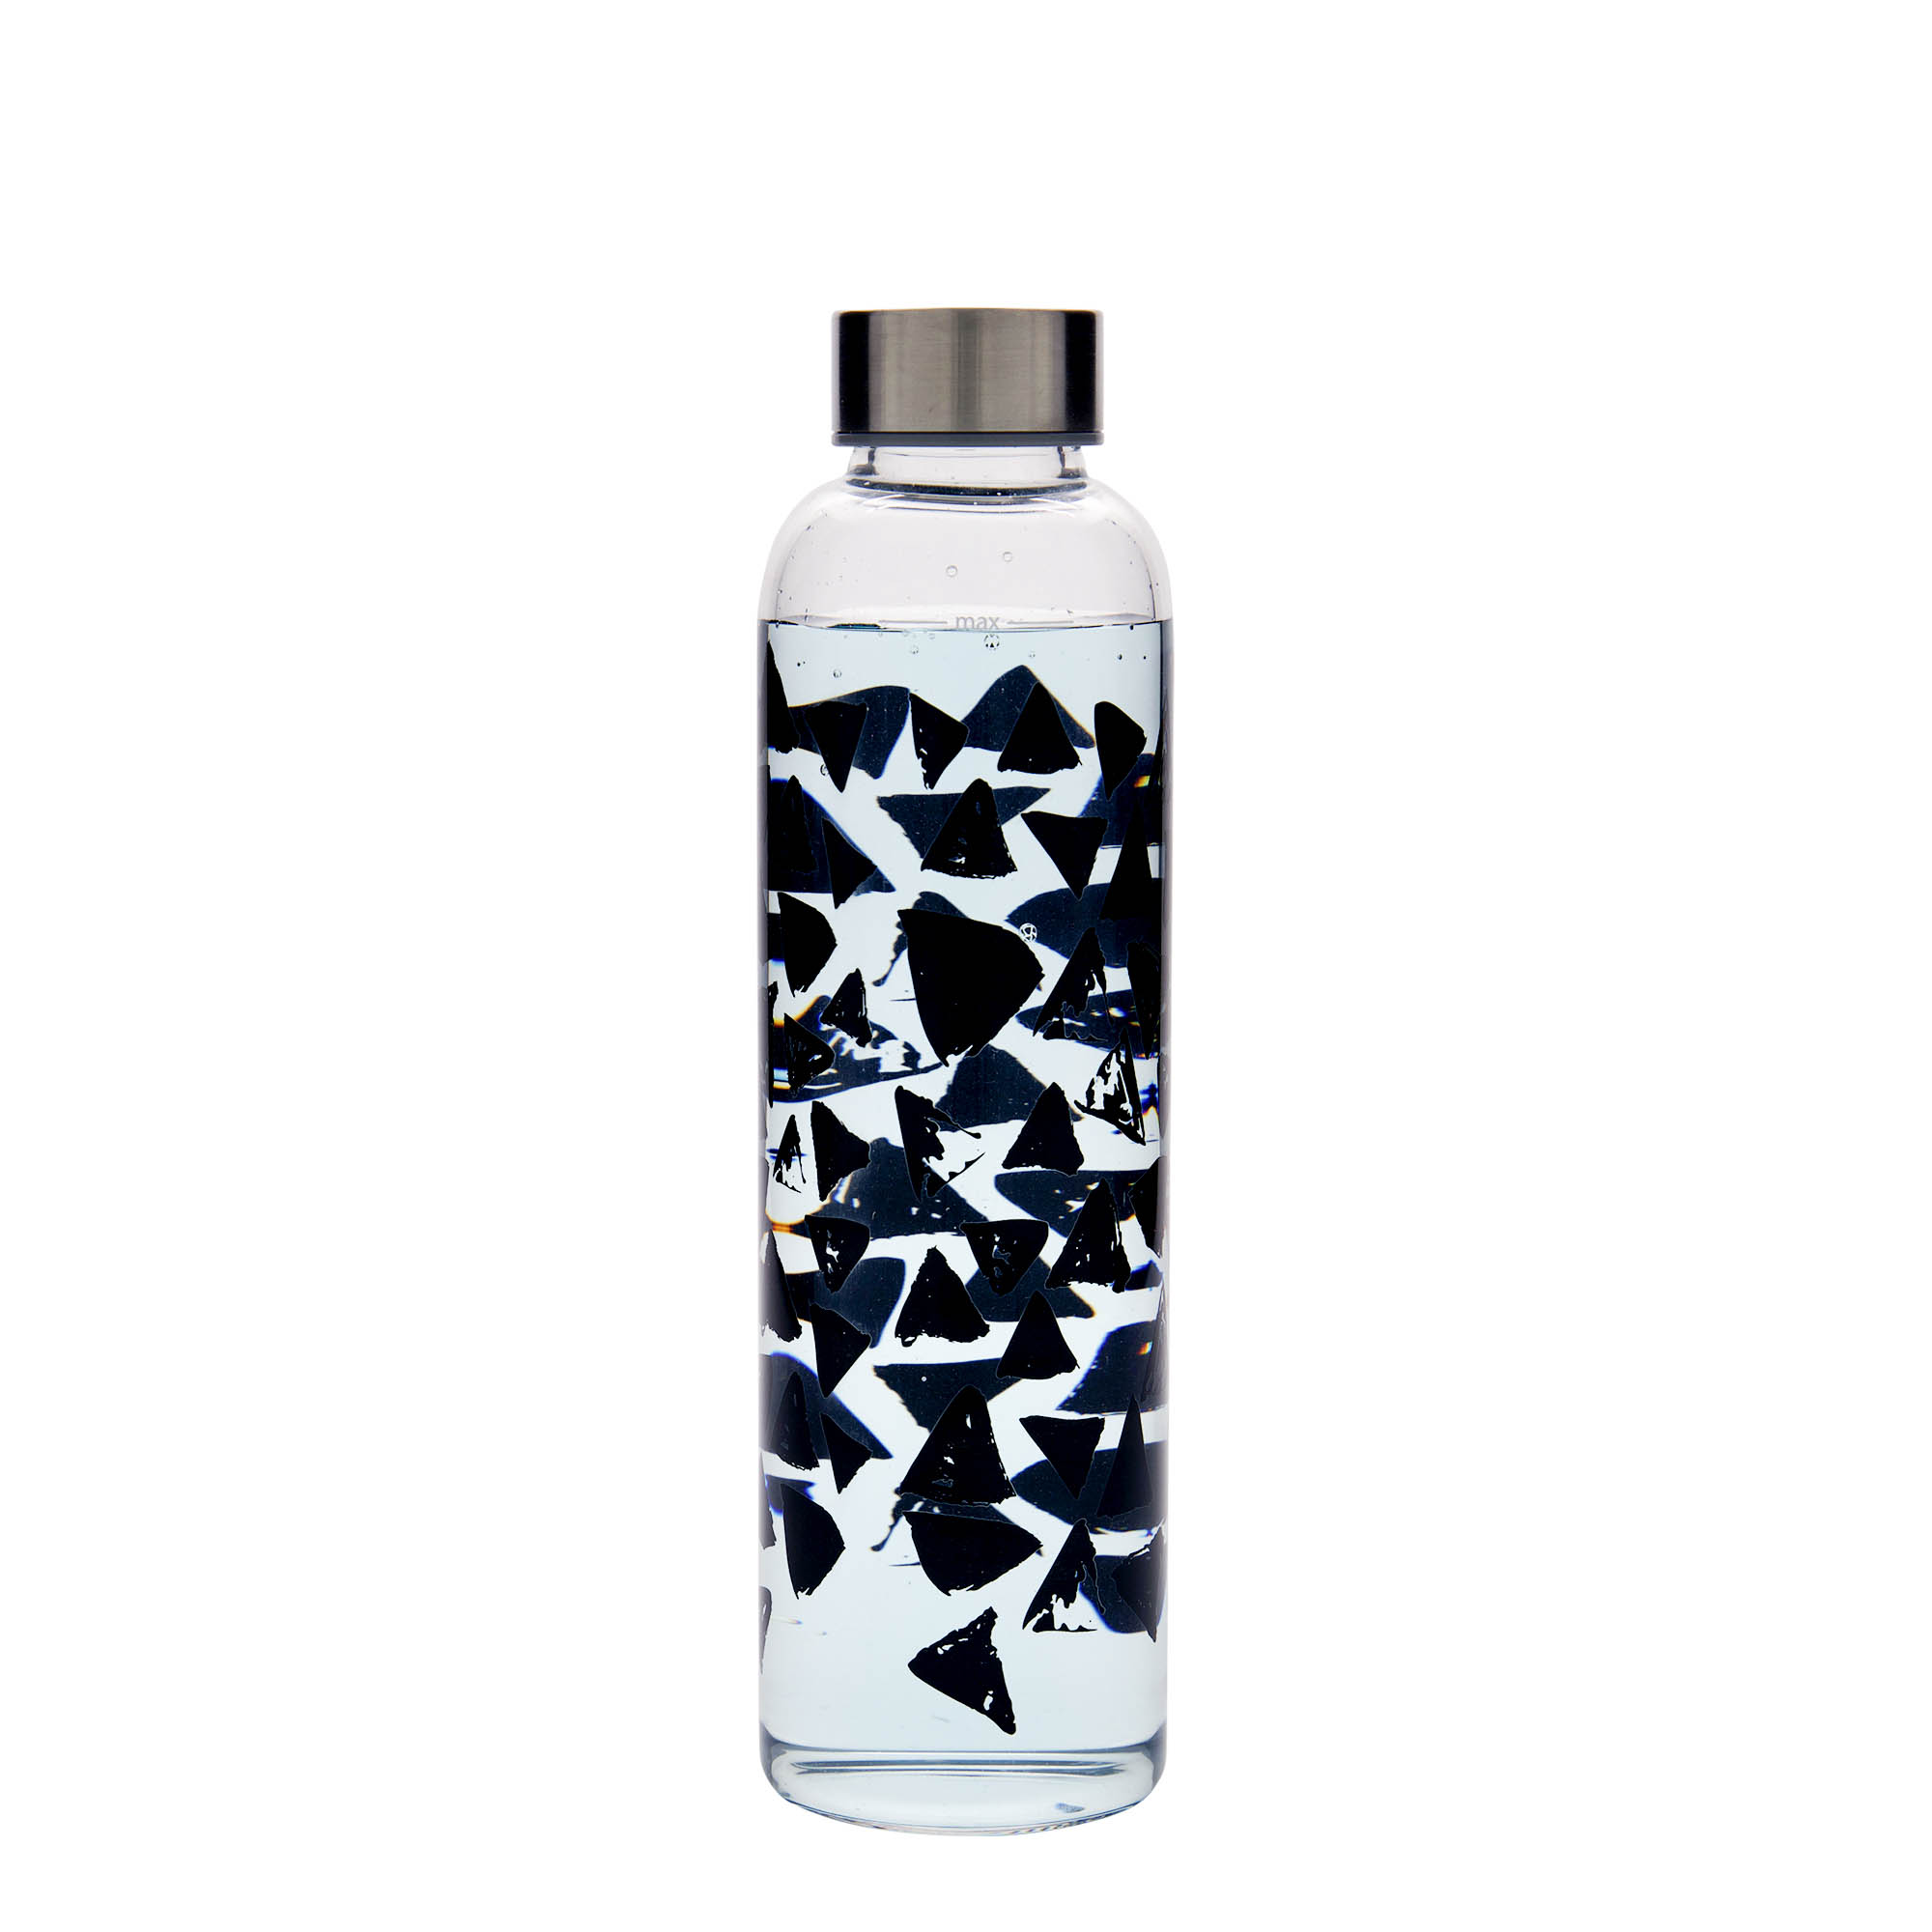 500 ml-es ivópalack, 'Perseus', motívum: Fekete háromszögek, szájnyílás: csavaros kupak